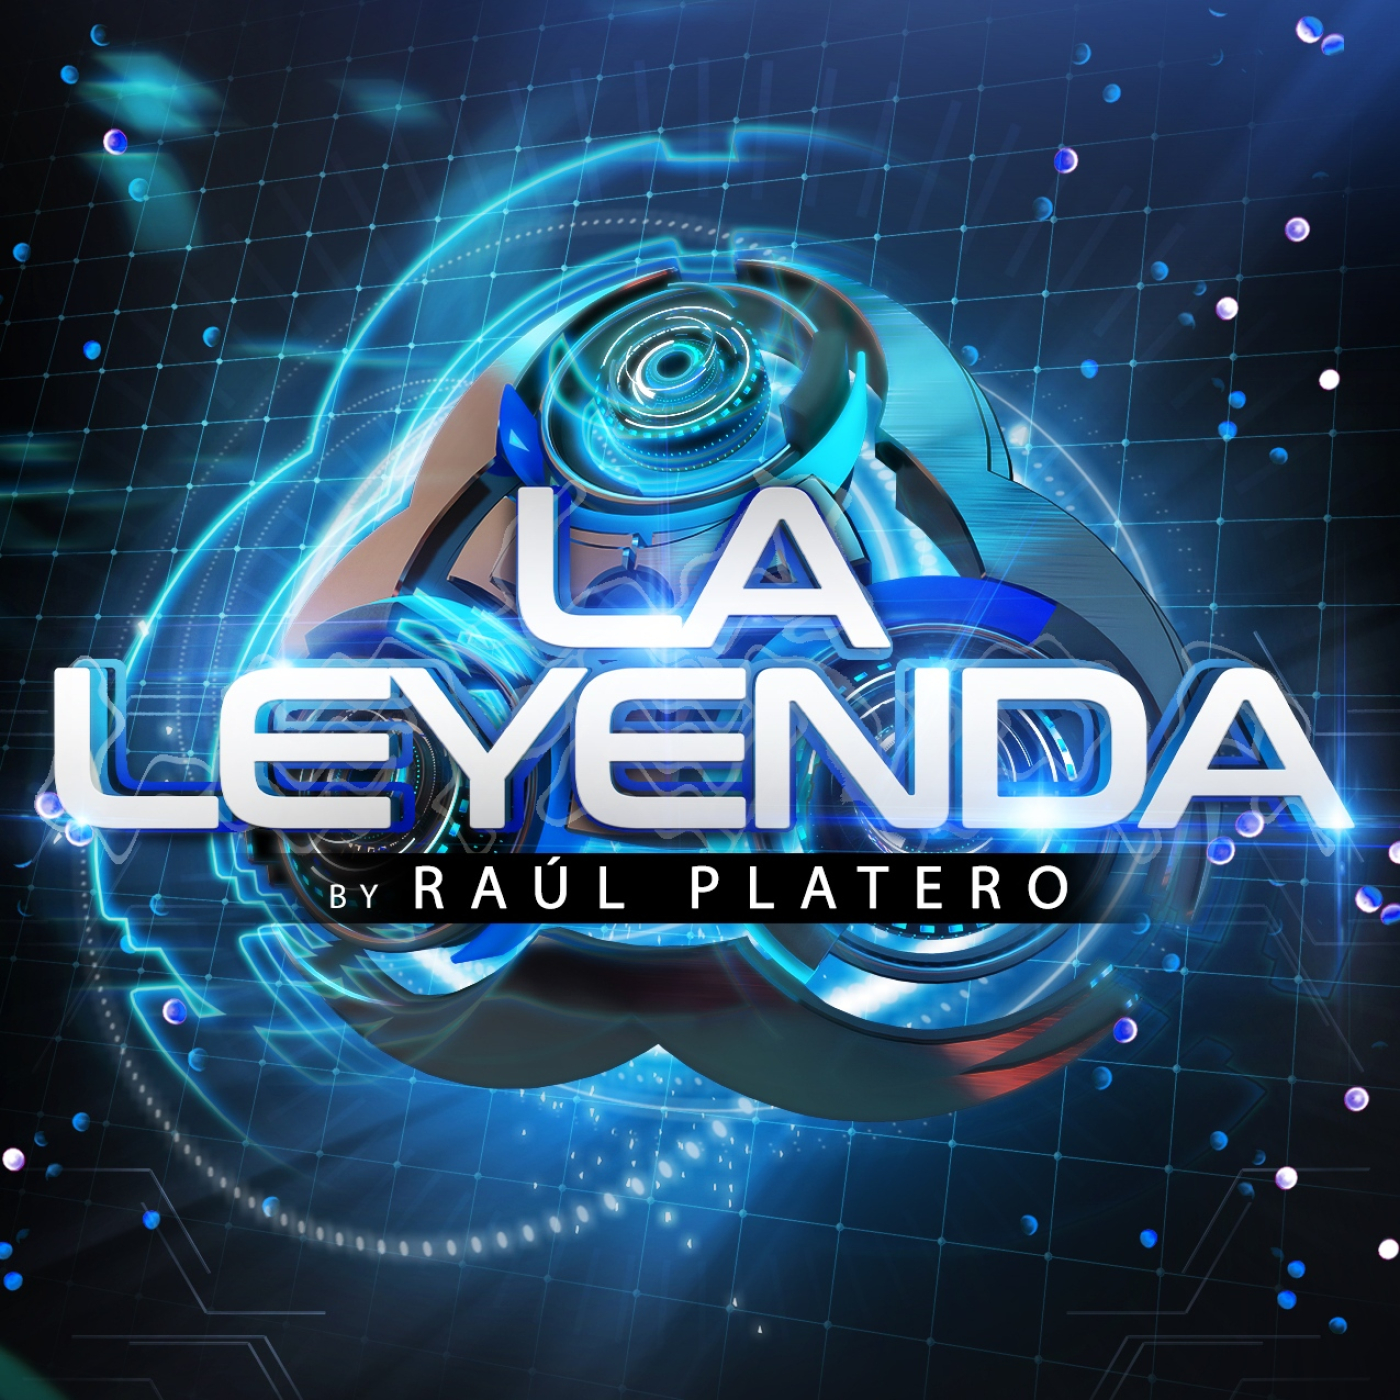 LA LEYENDA by RAUL PLATERO 2022 (Miércoles 15 Junio)